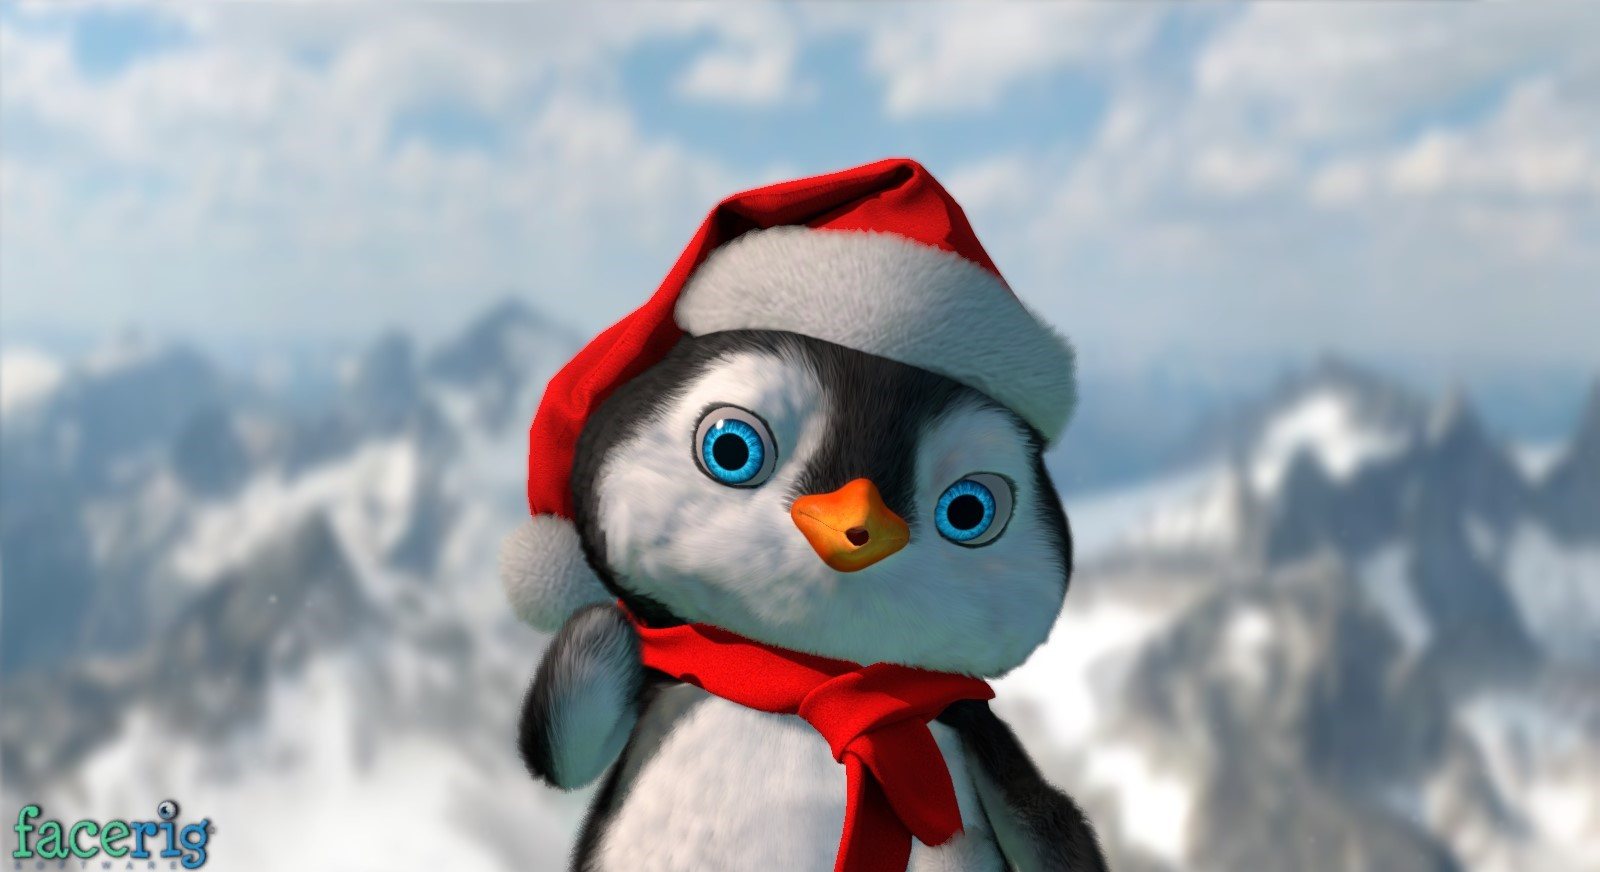 [$ 2.71] FaceRig - Winter Holidays Avatars 2015 DLC Steam CD Key